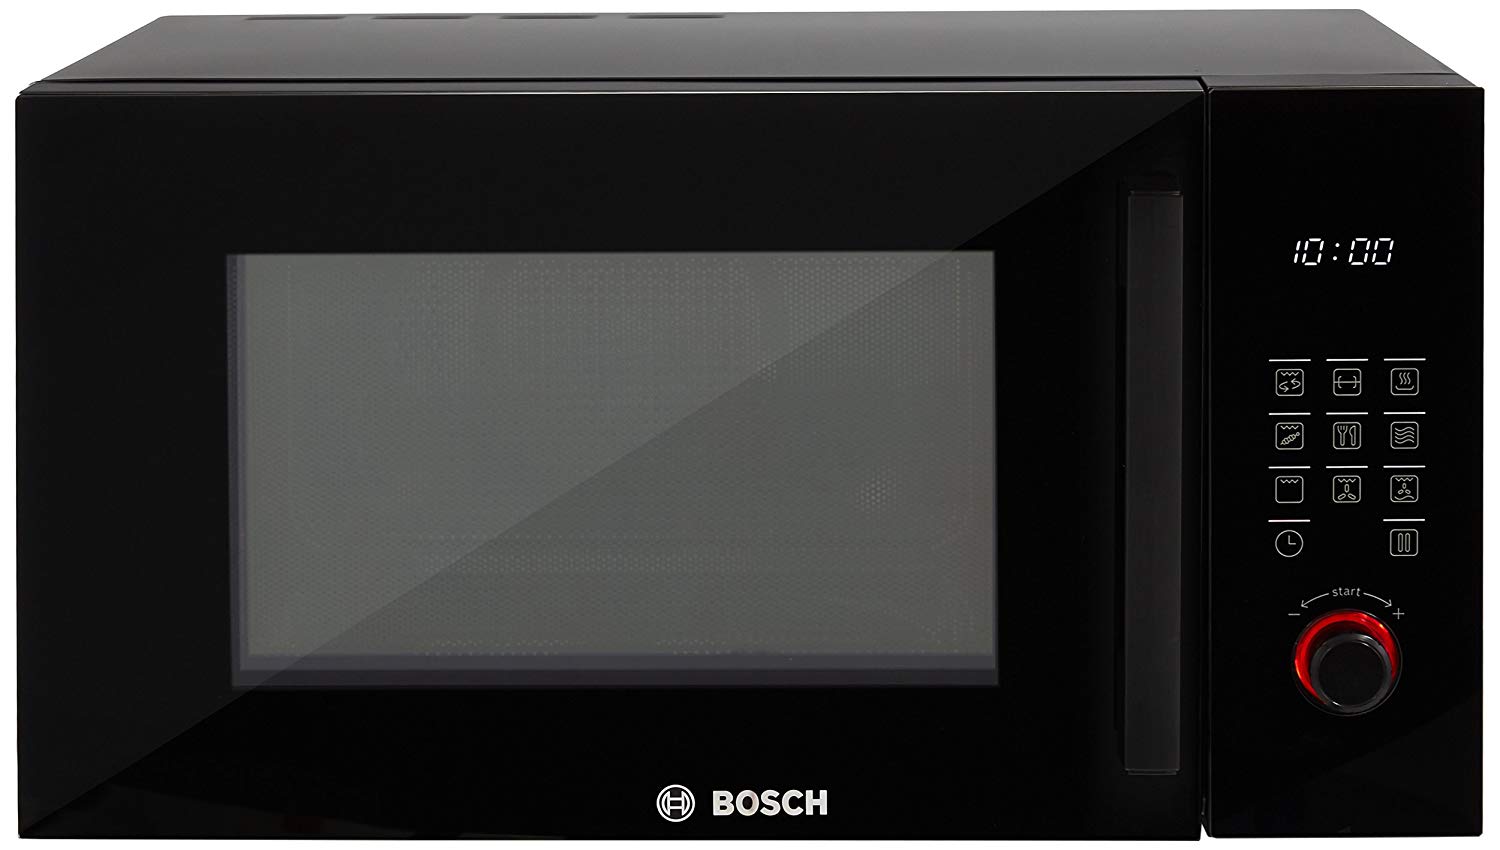 Микроволновая печь бош купить. Микроволновая печь встраиваемая Bosch bfl524mb0. Микроволновая печь встраиваемая Bosch bfl623mc3. Микроволновая печь Bosch bel554ms0. Микроволновая печь встраиваемая Bosch bel554ms0.